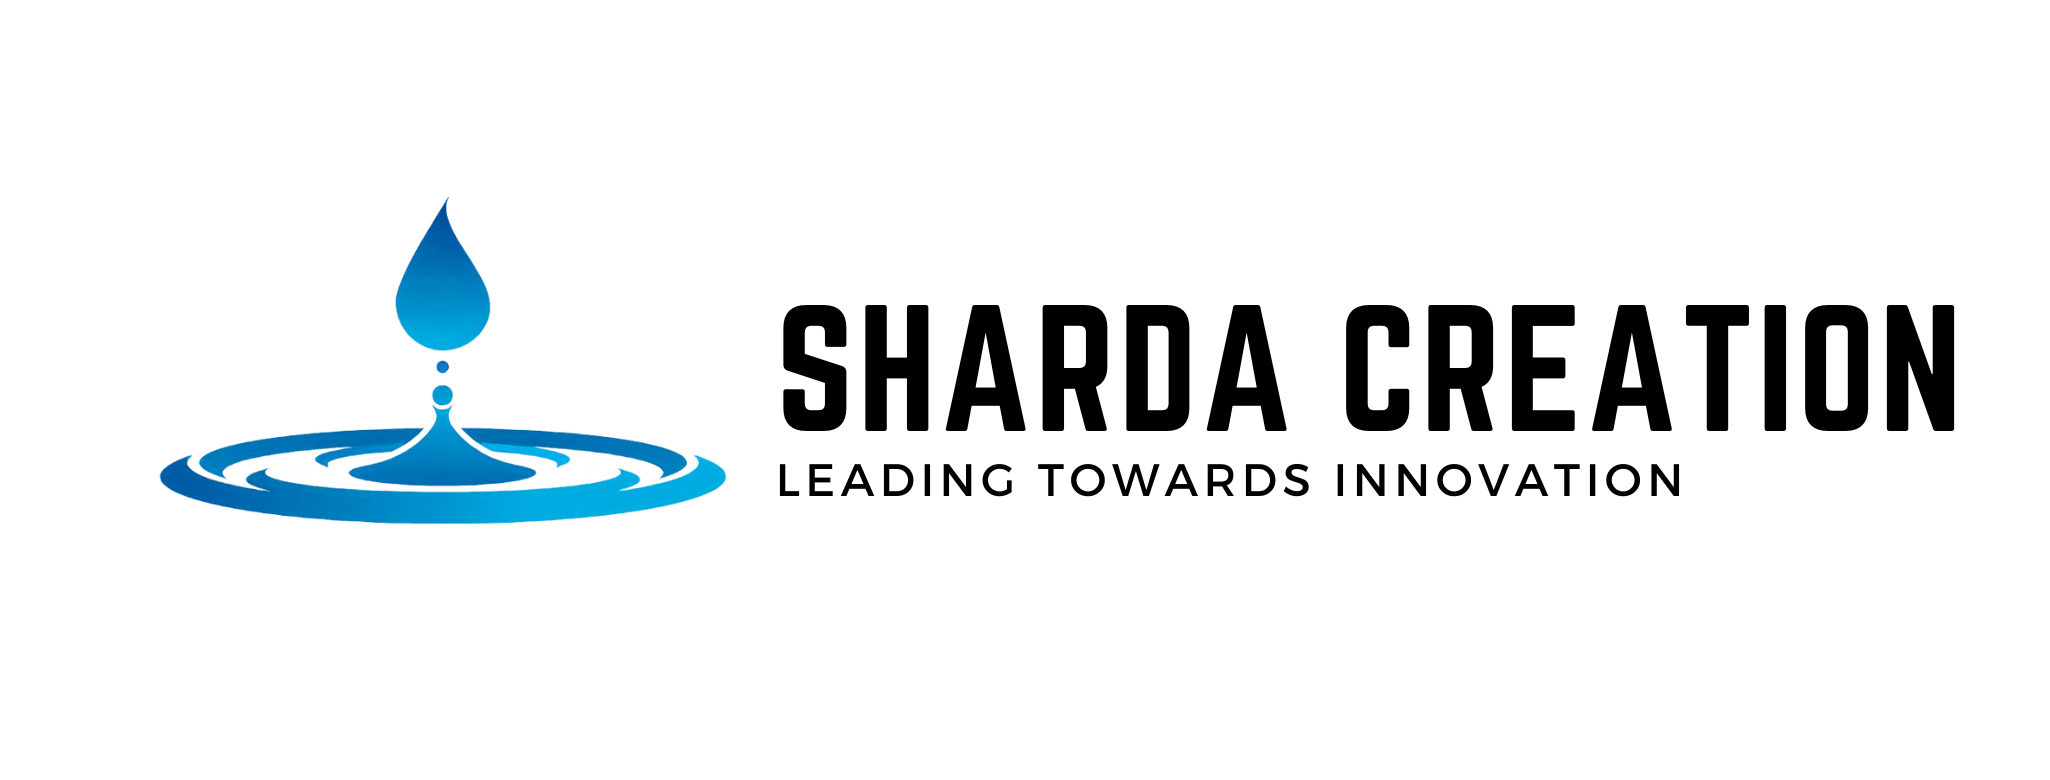 Sharda Creation